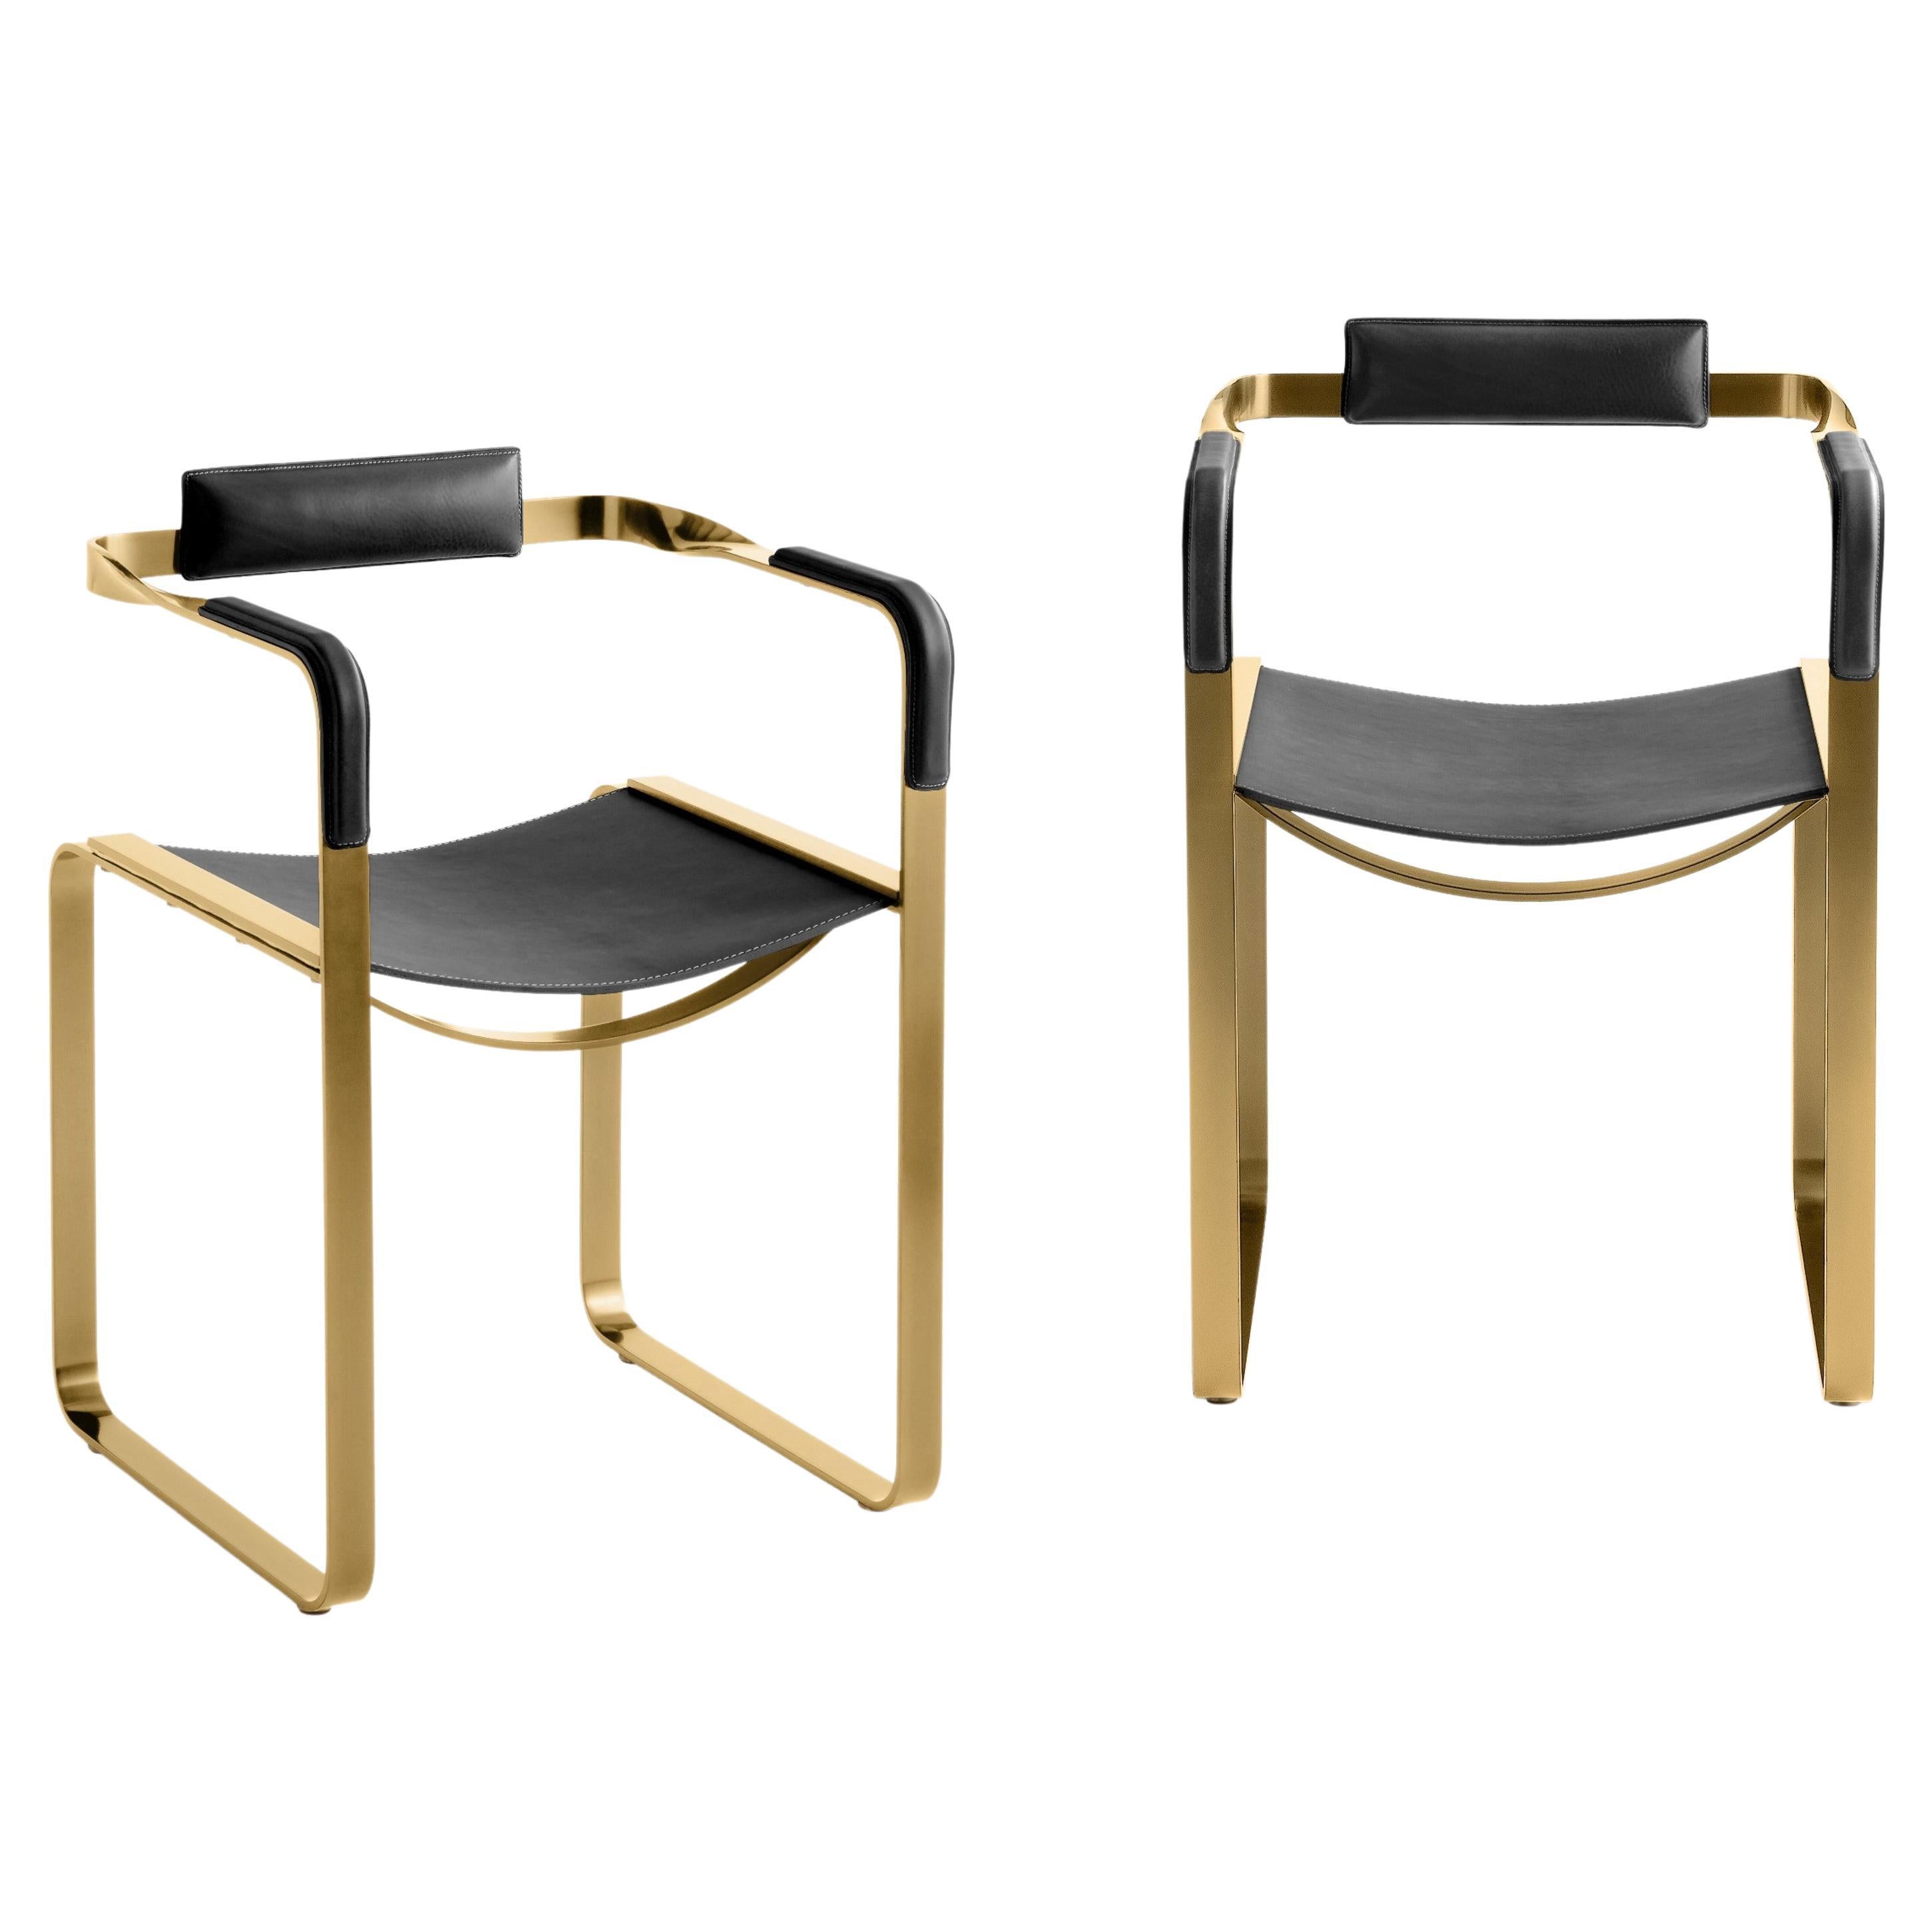 Set aus 2 Sesseln, gealtertes Messing, Stahl und schwarzes Sattelleder, zeitgenössischer Stil